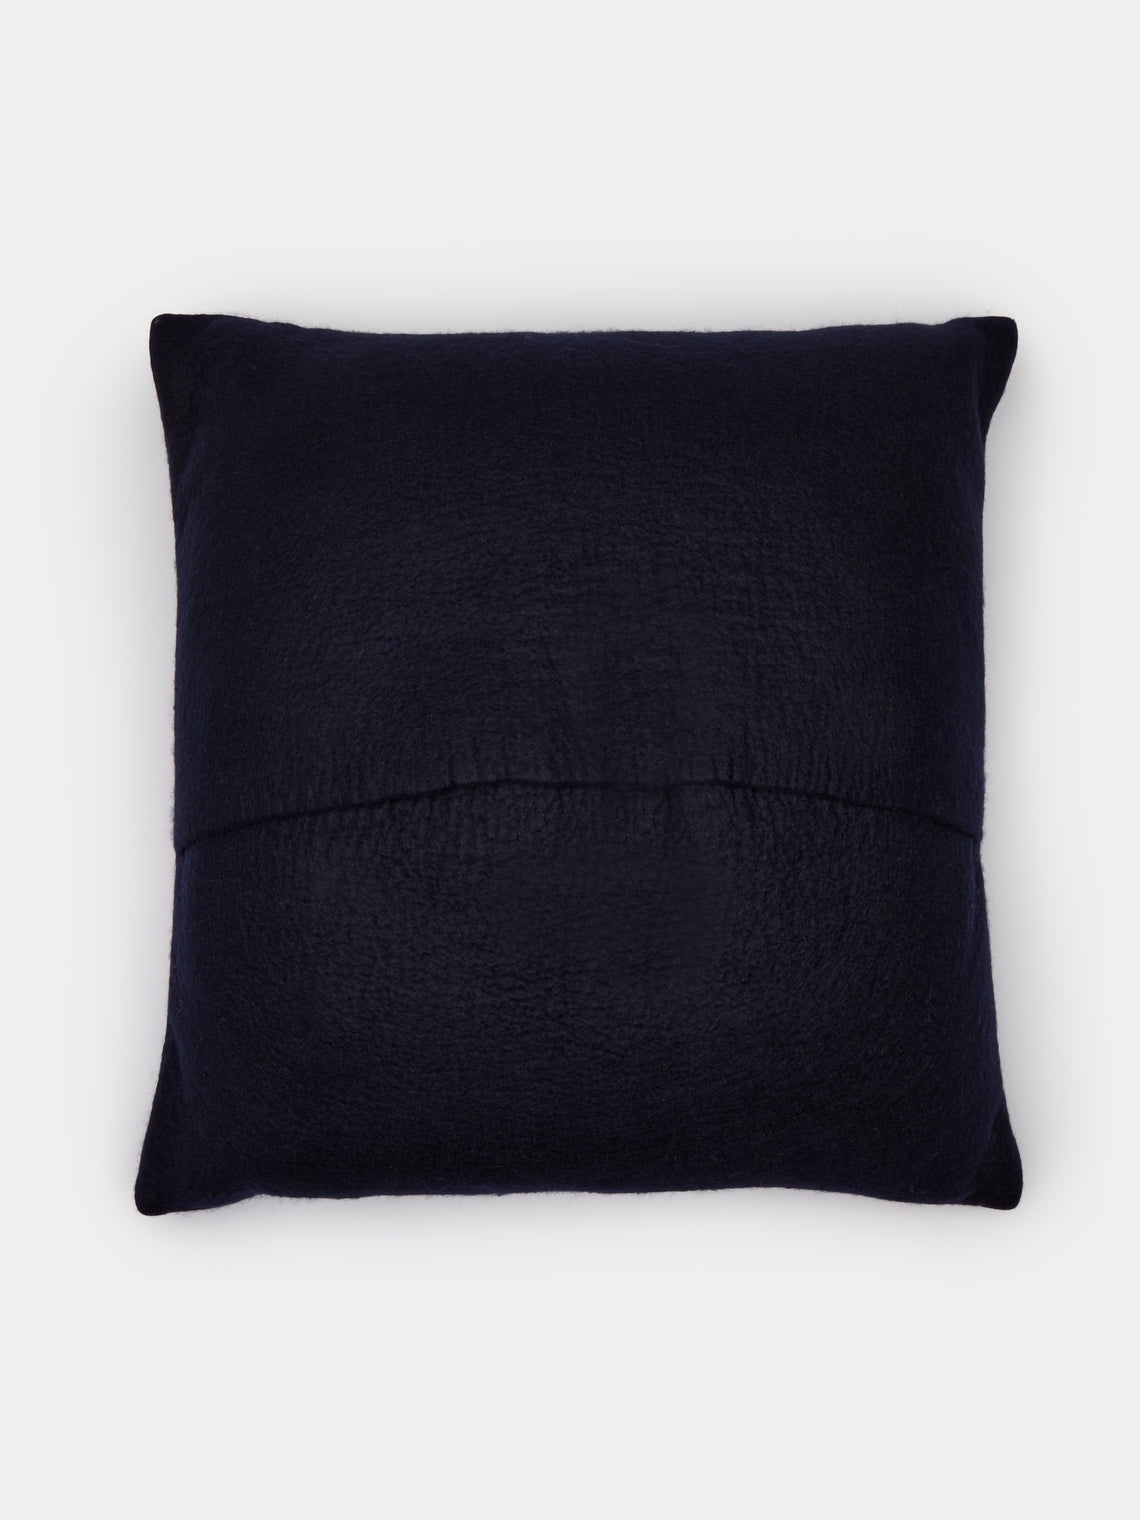 Rose Uniacke - Hand-Dyed Felted Cashmere Large Cushion - Blue - ABASK